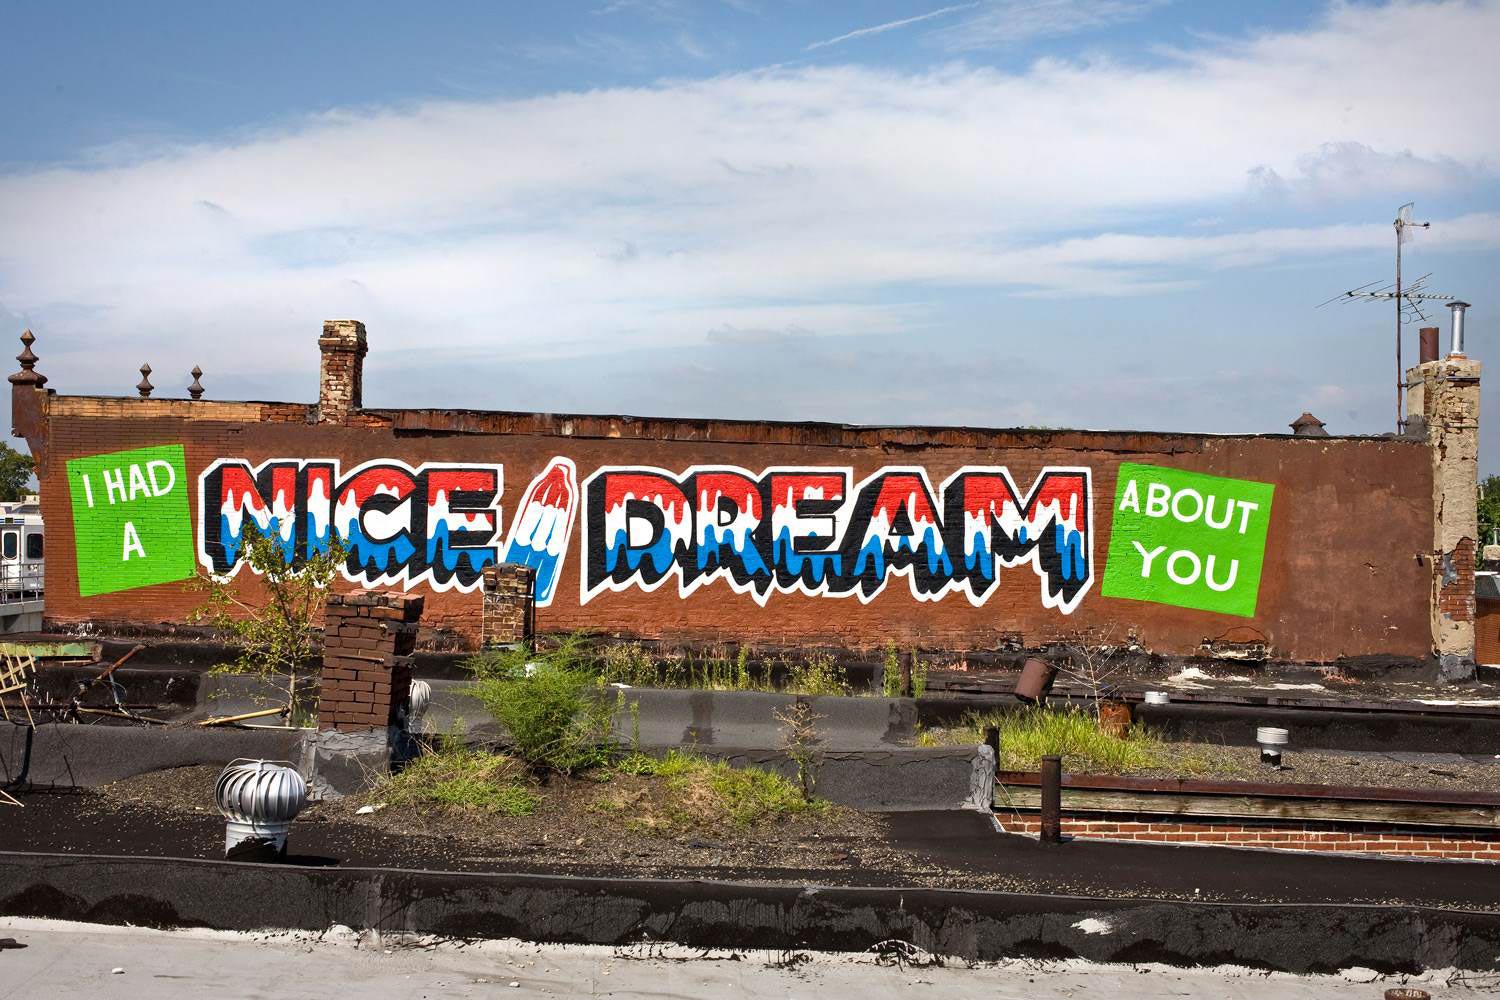 Stephen Powers, Nice Dream, A Love Letter For You, City of Philadelphia Mural Arts Program